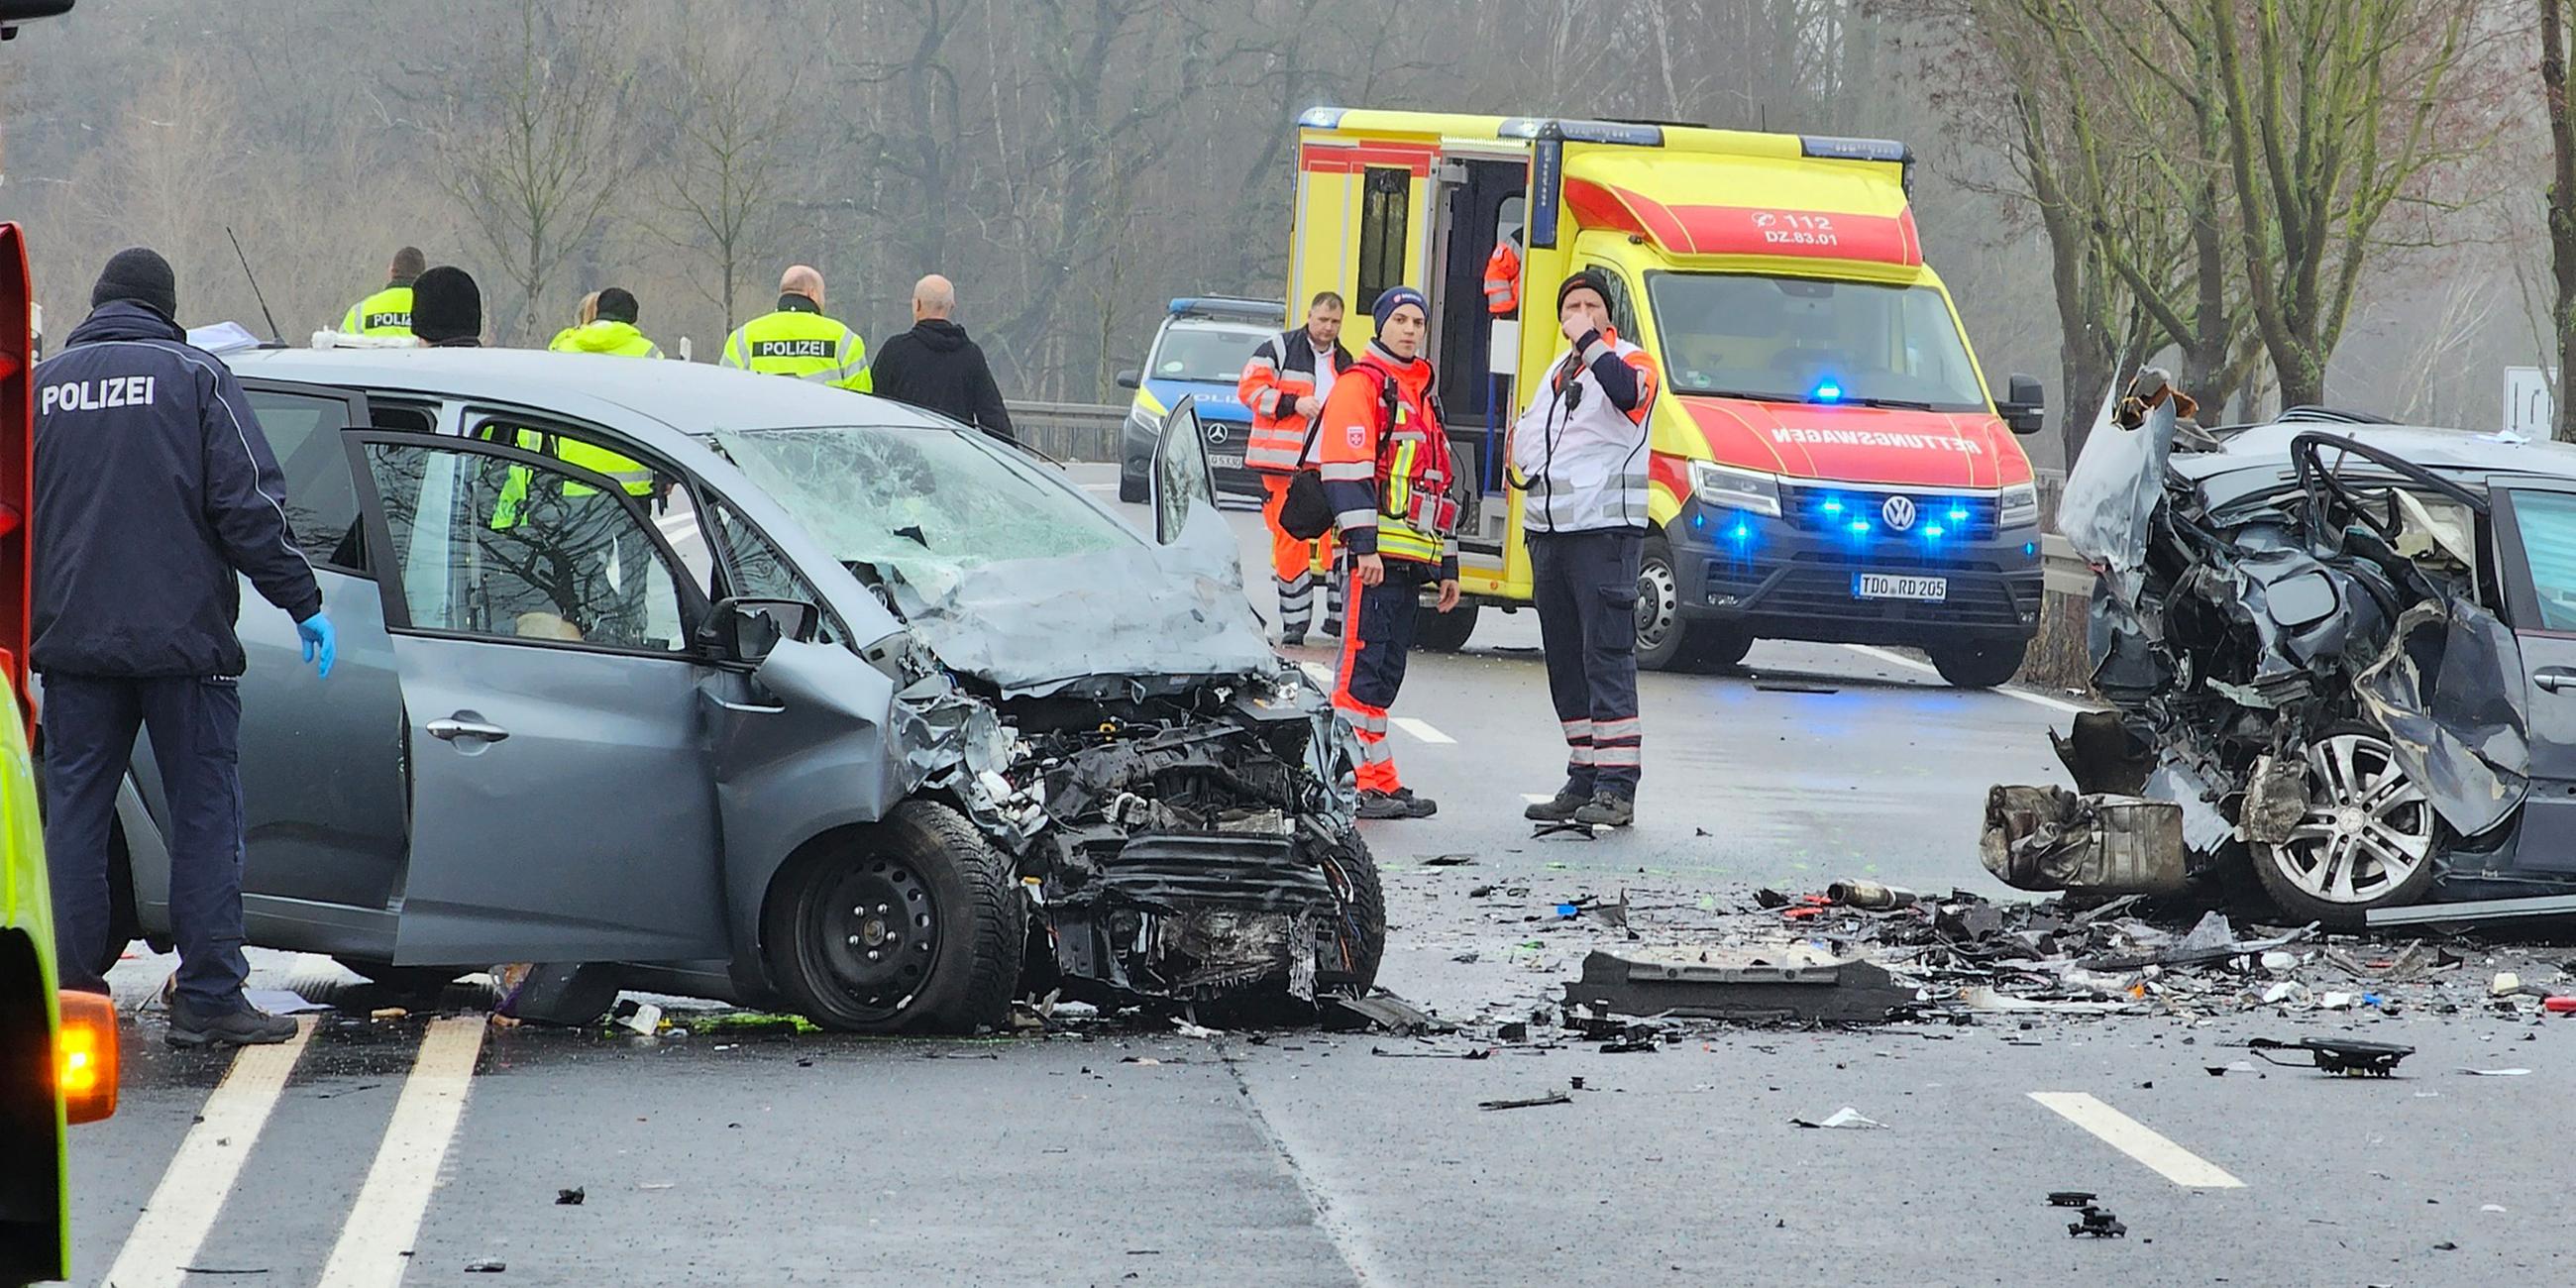 Rettungsdienst, Polizei und Sachverständige untersuchen Unfall auf der B87 bei Eilenburg